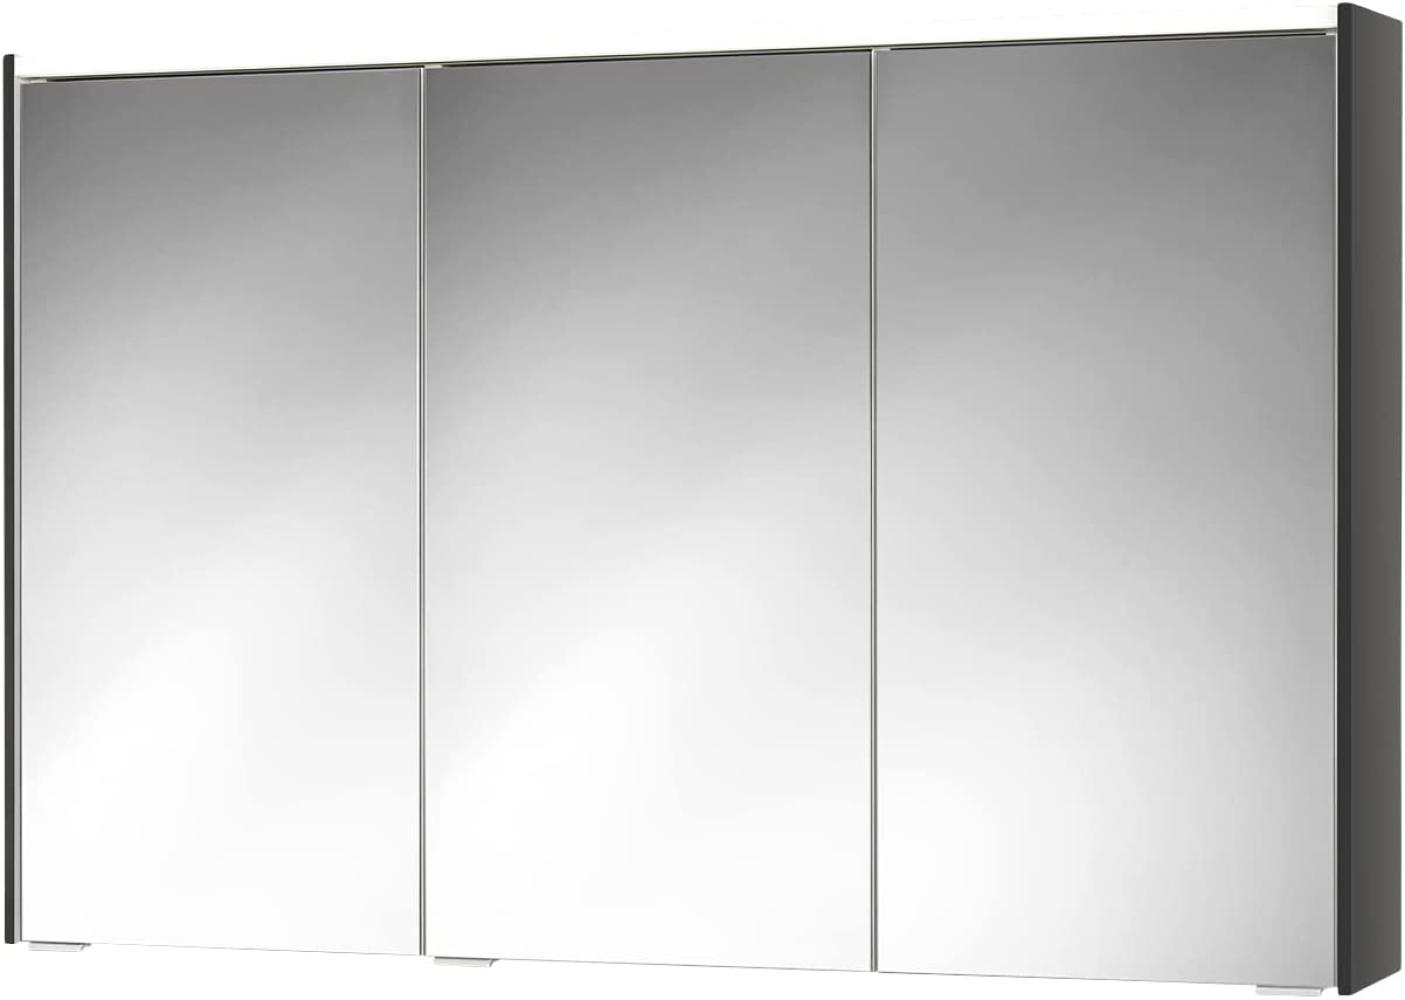 Sieper Spiegelschrank KHX mit LED Beleuchtung 120cm breit, Badezimmer Spiegelschrank aus MDF, mit Steckdose | Anthrazit Bild 1